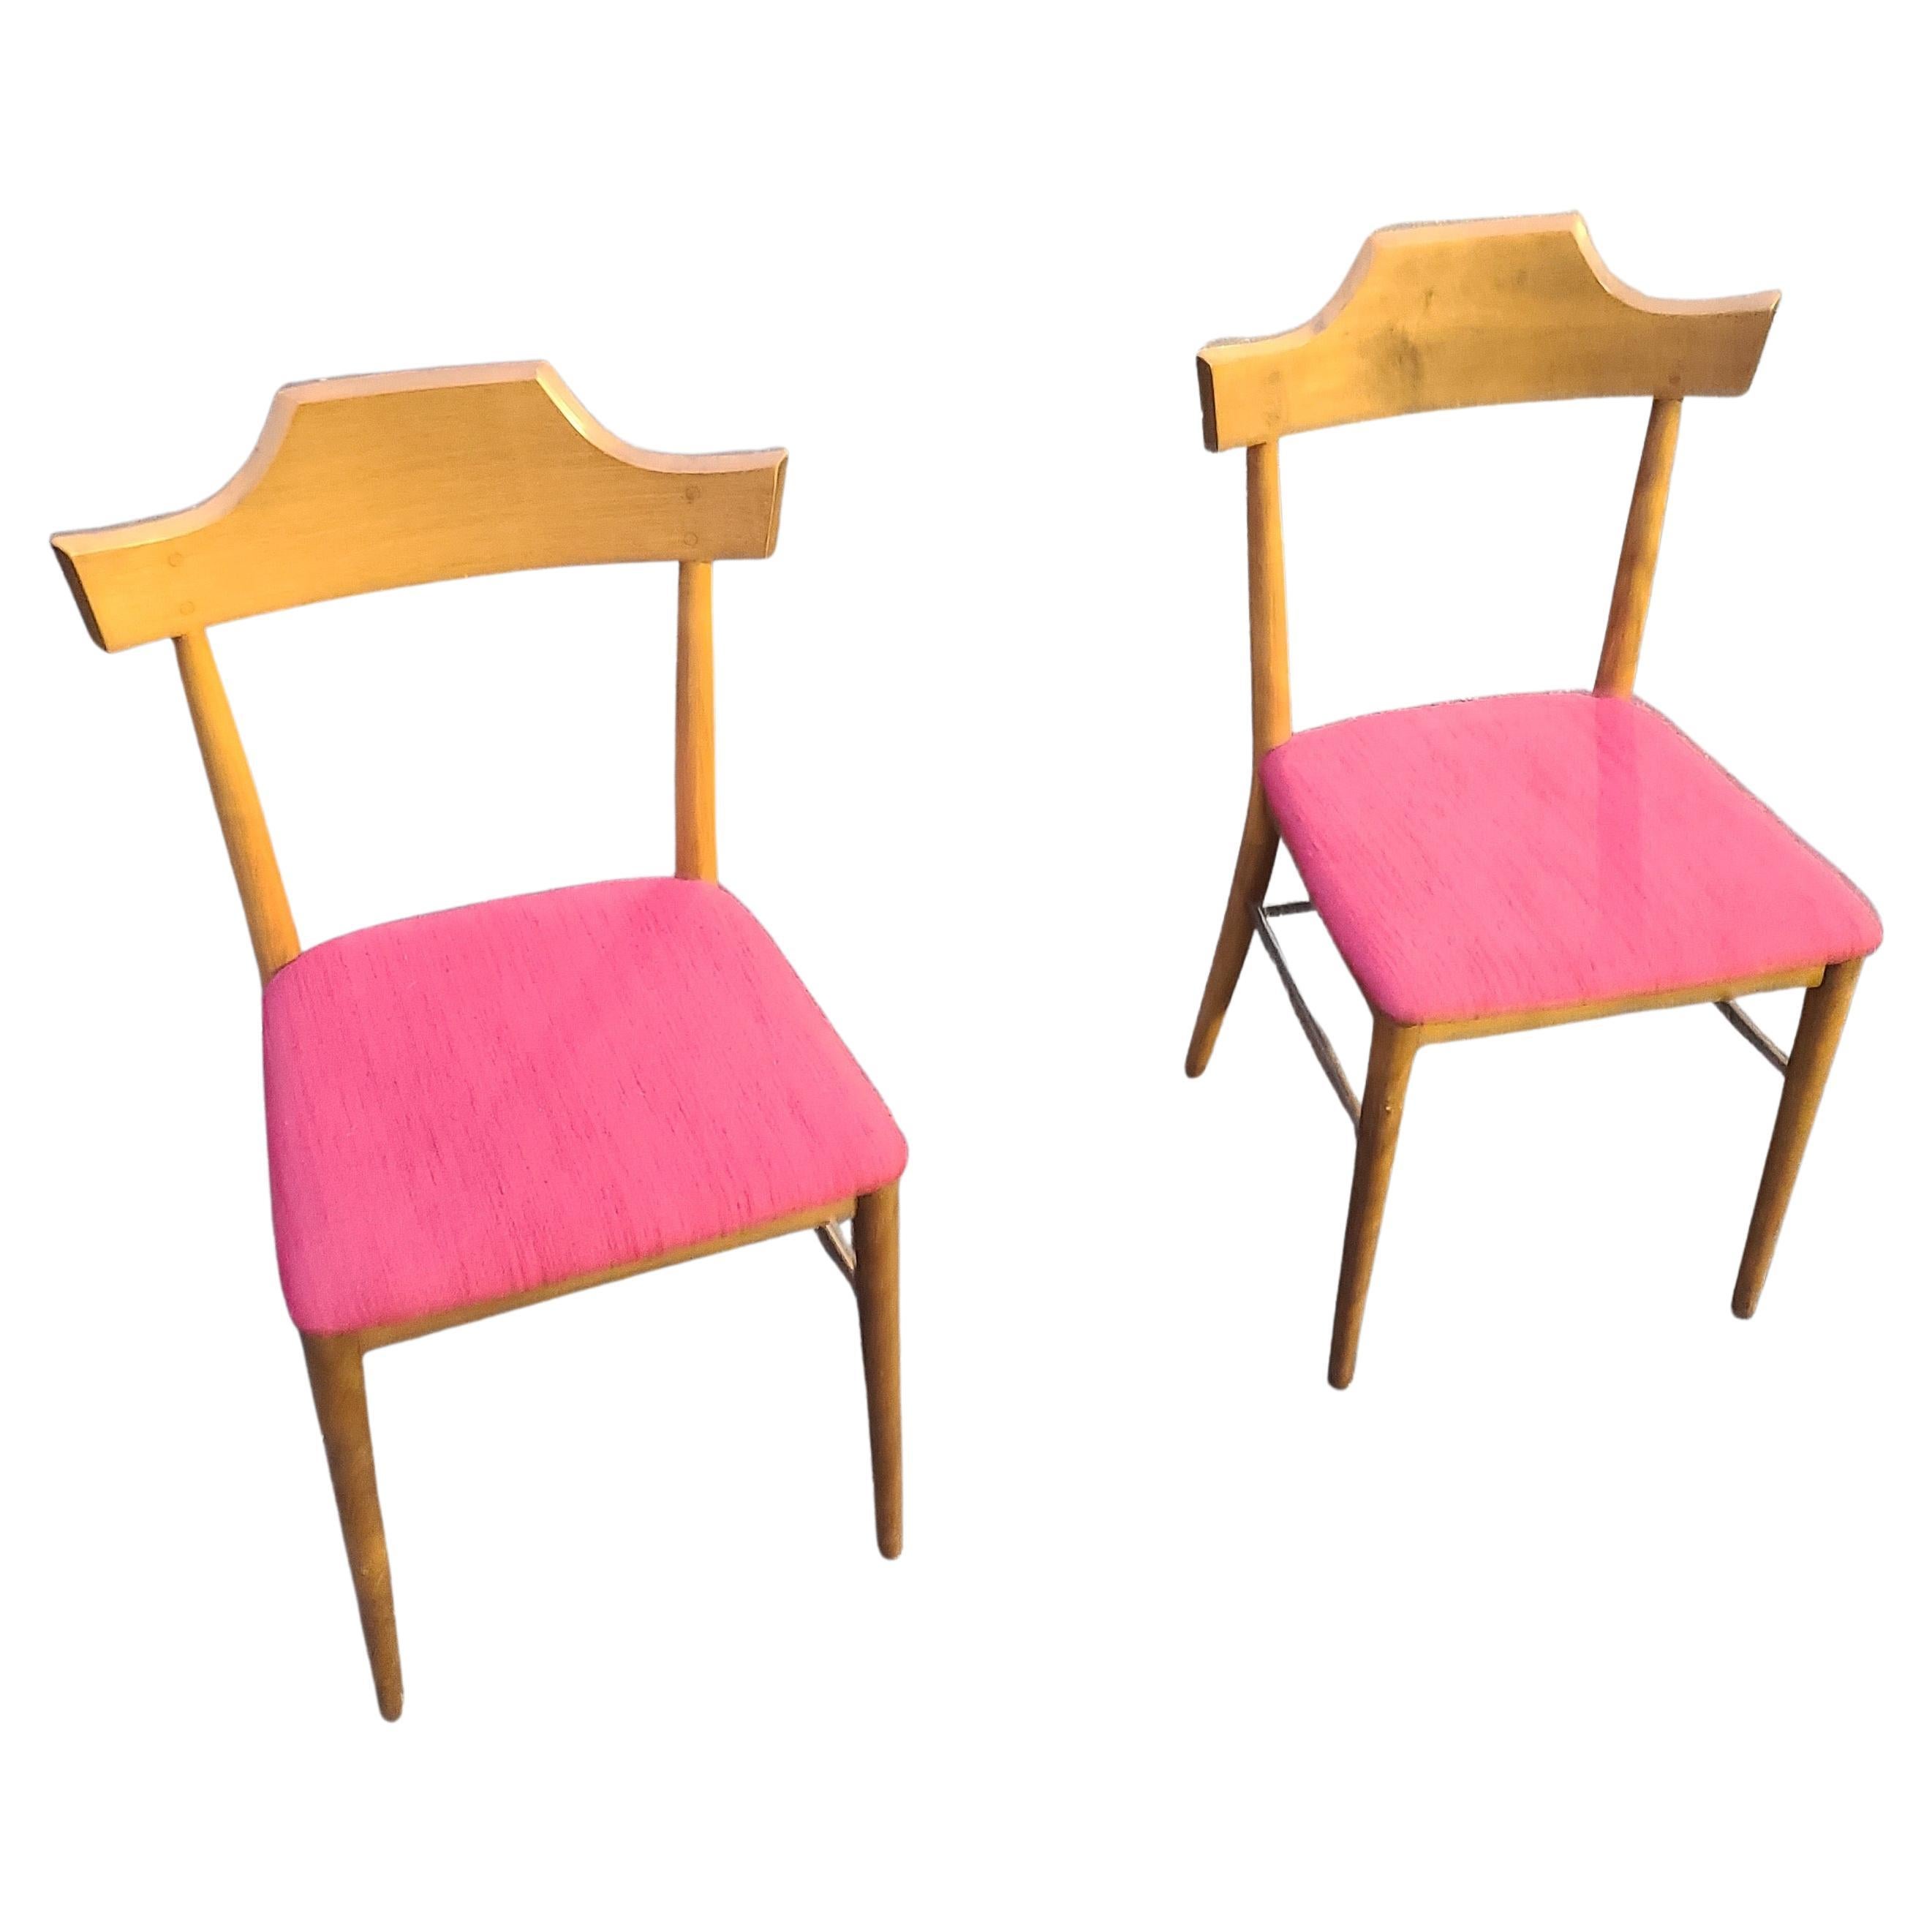 Veuillez nous envoyer un message pour obtenir un devis d'expédition efficace vers votre lieu de résidence.

Paire de chaises de salle à manger Paul McCobb.
Les deux chaises ont des étiquettes complètes.